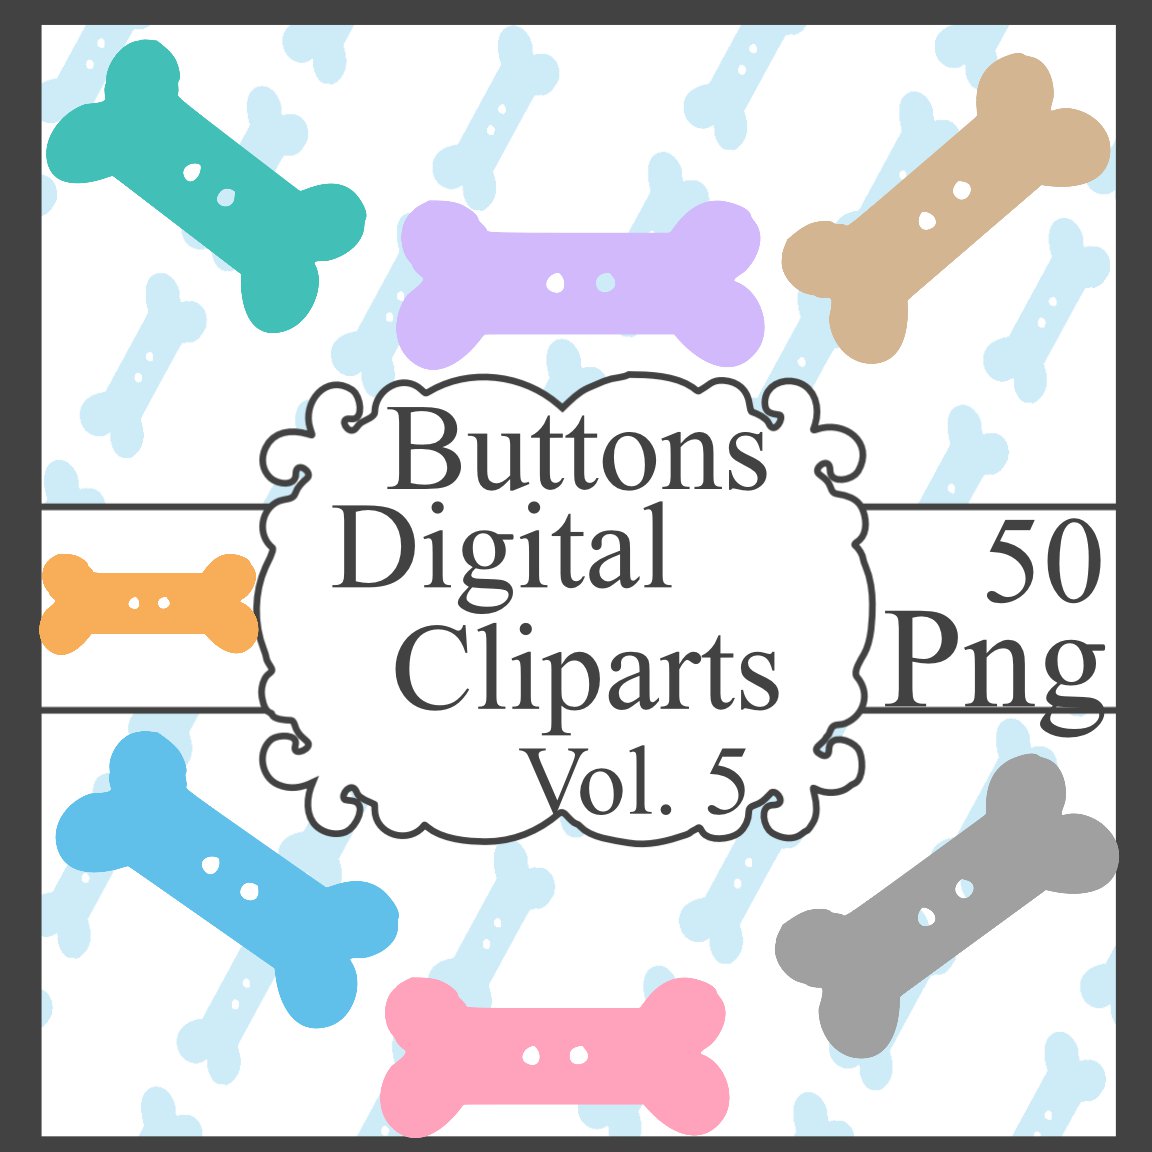 Buttons Digital Cliparts Vol. 5